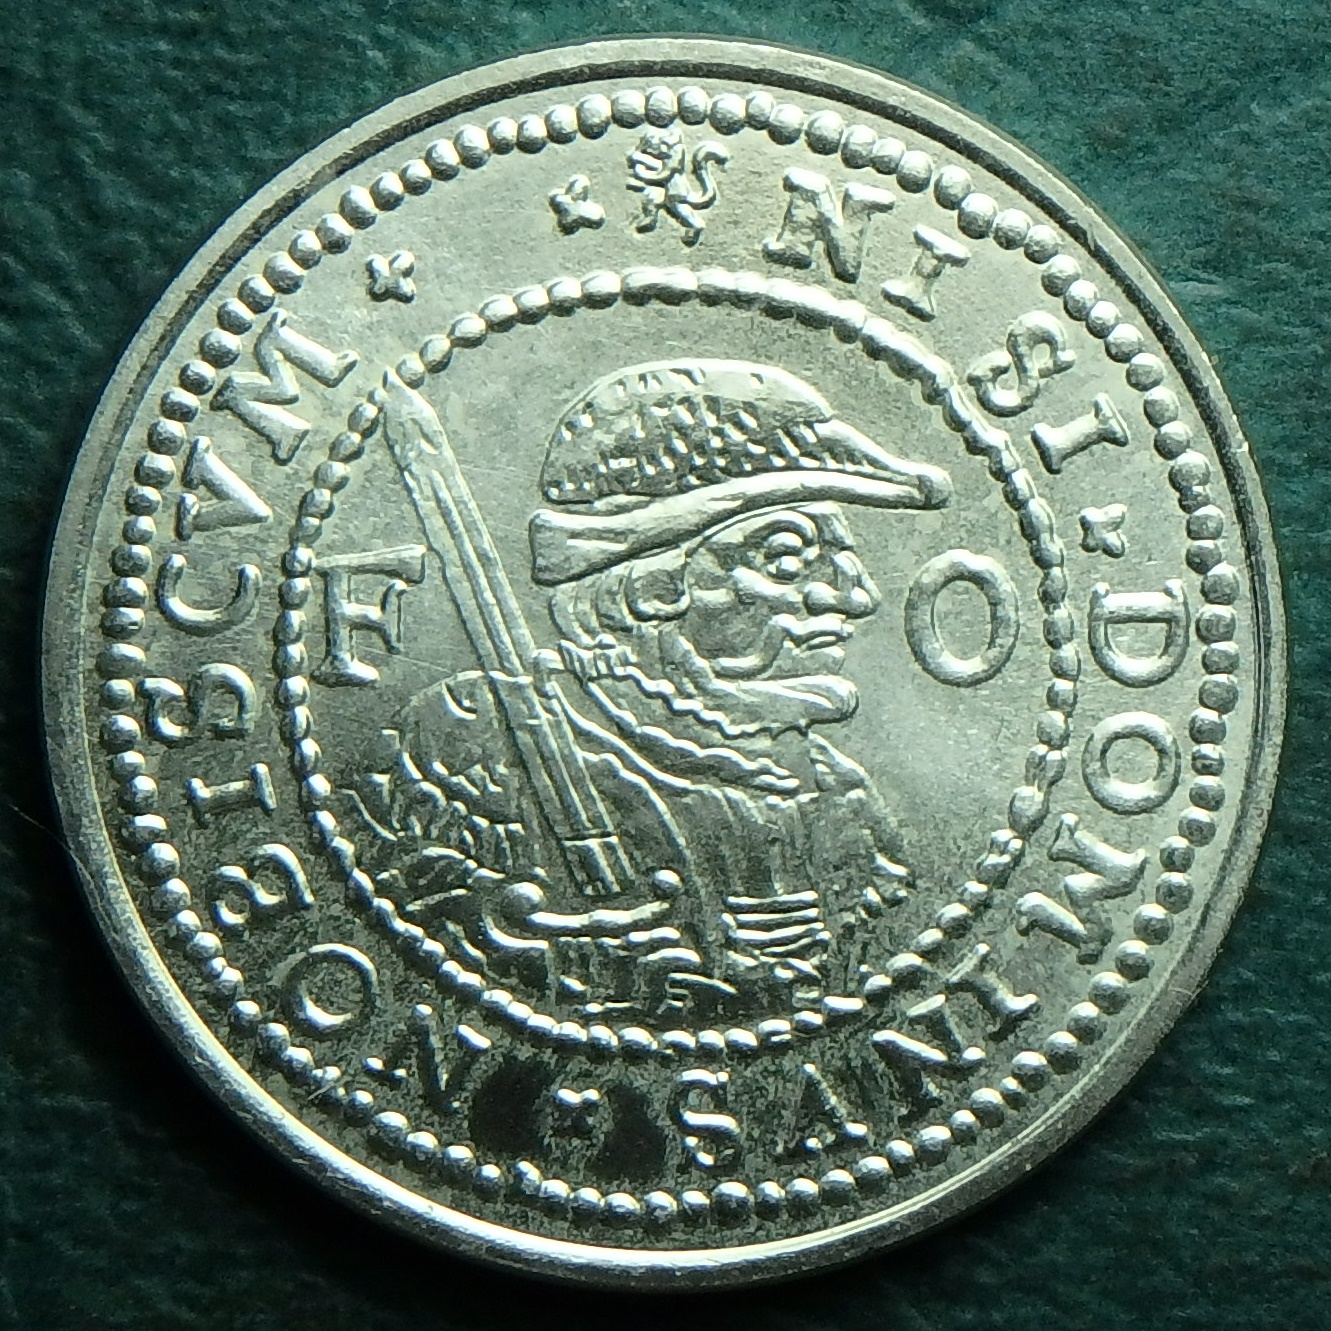 1976 NL 40 o obv token.JPG